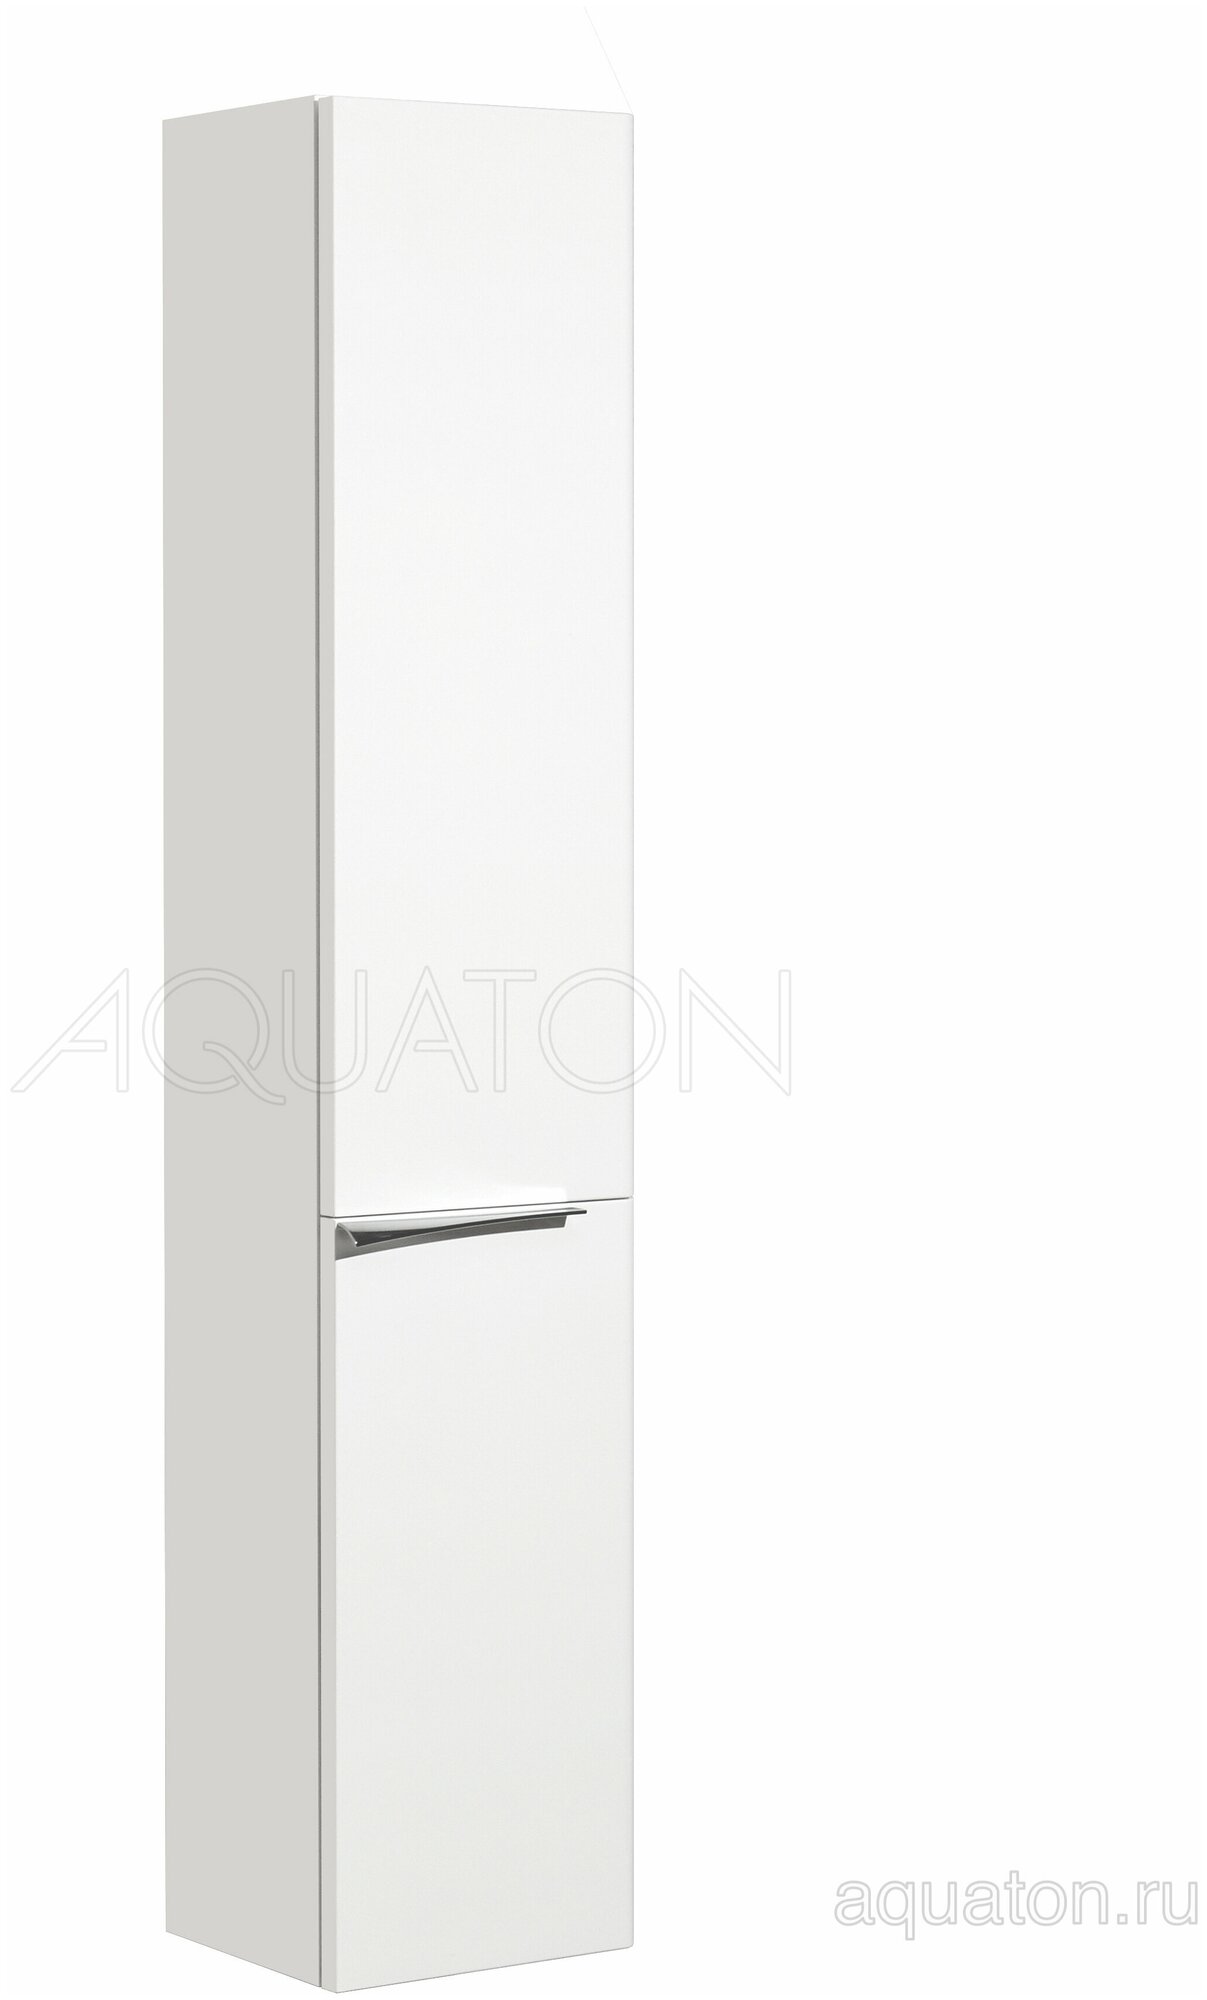 Шкаф - колонна Aquaton Беверли правая белый 1A235403BV01R